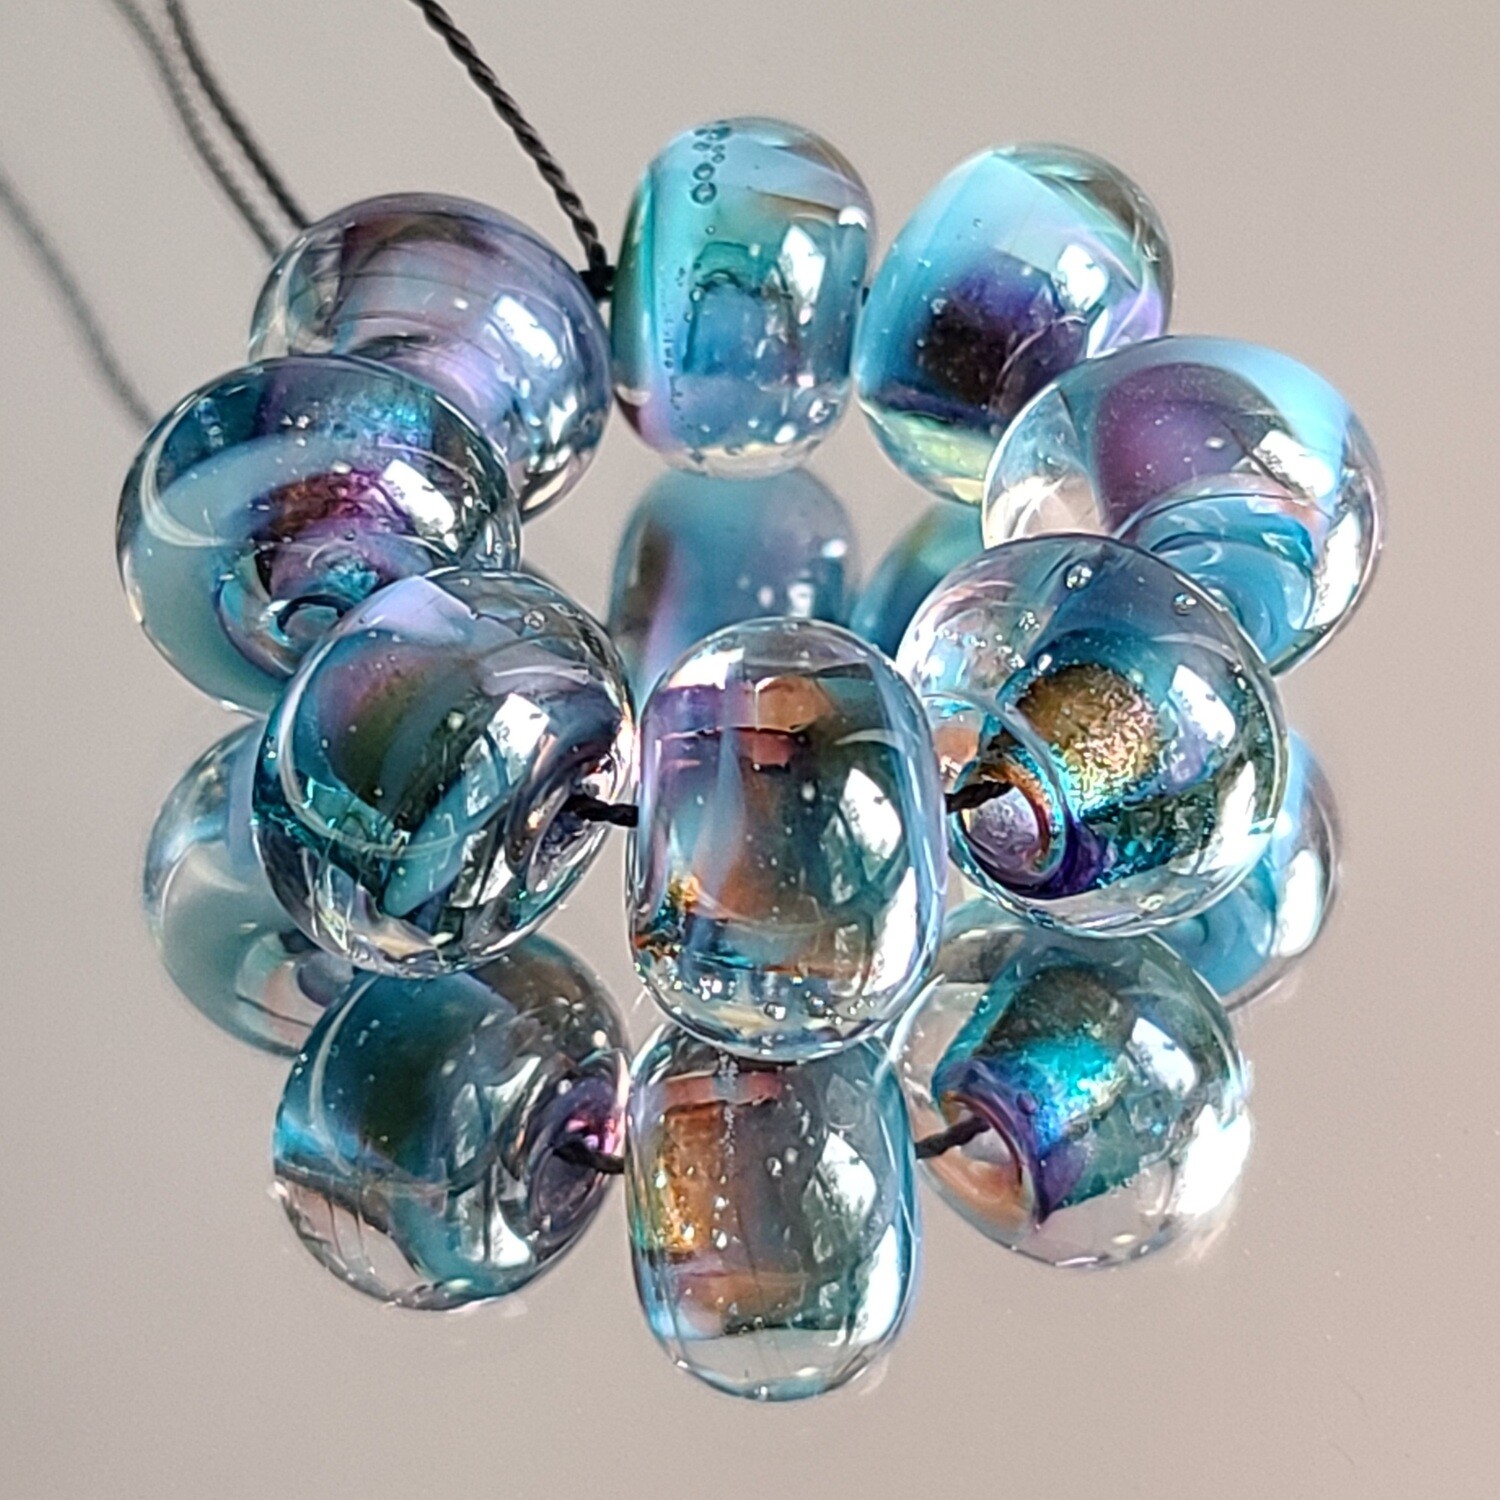 Peacock Handmade Lampwork Beads